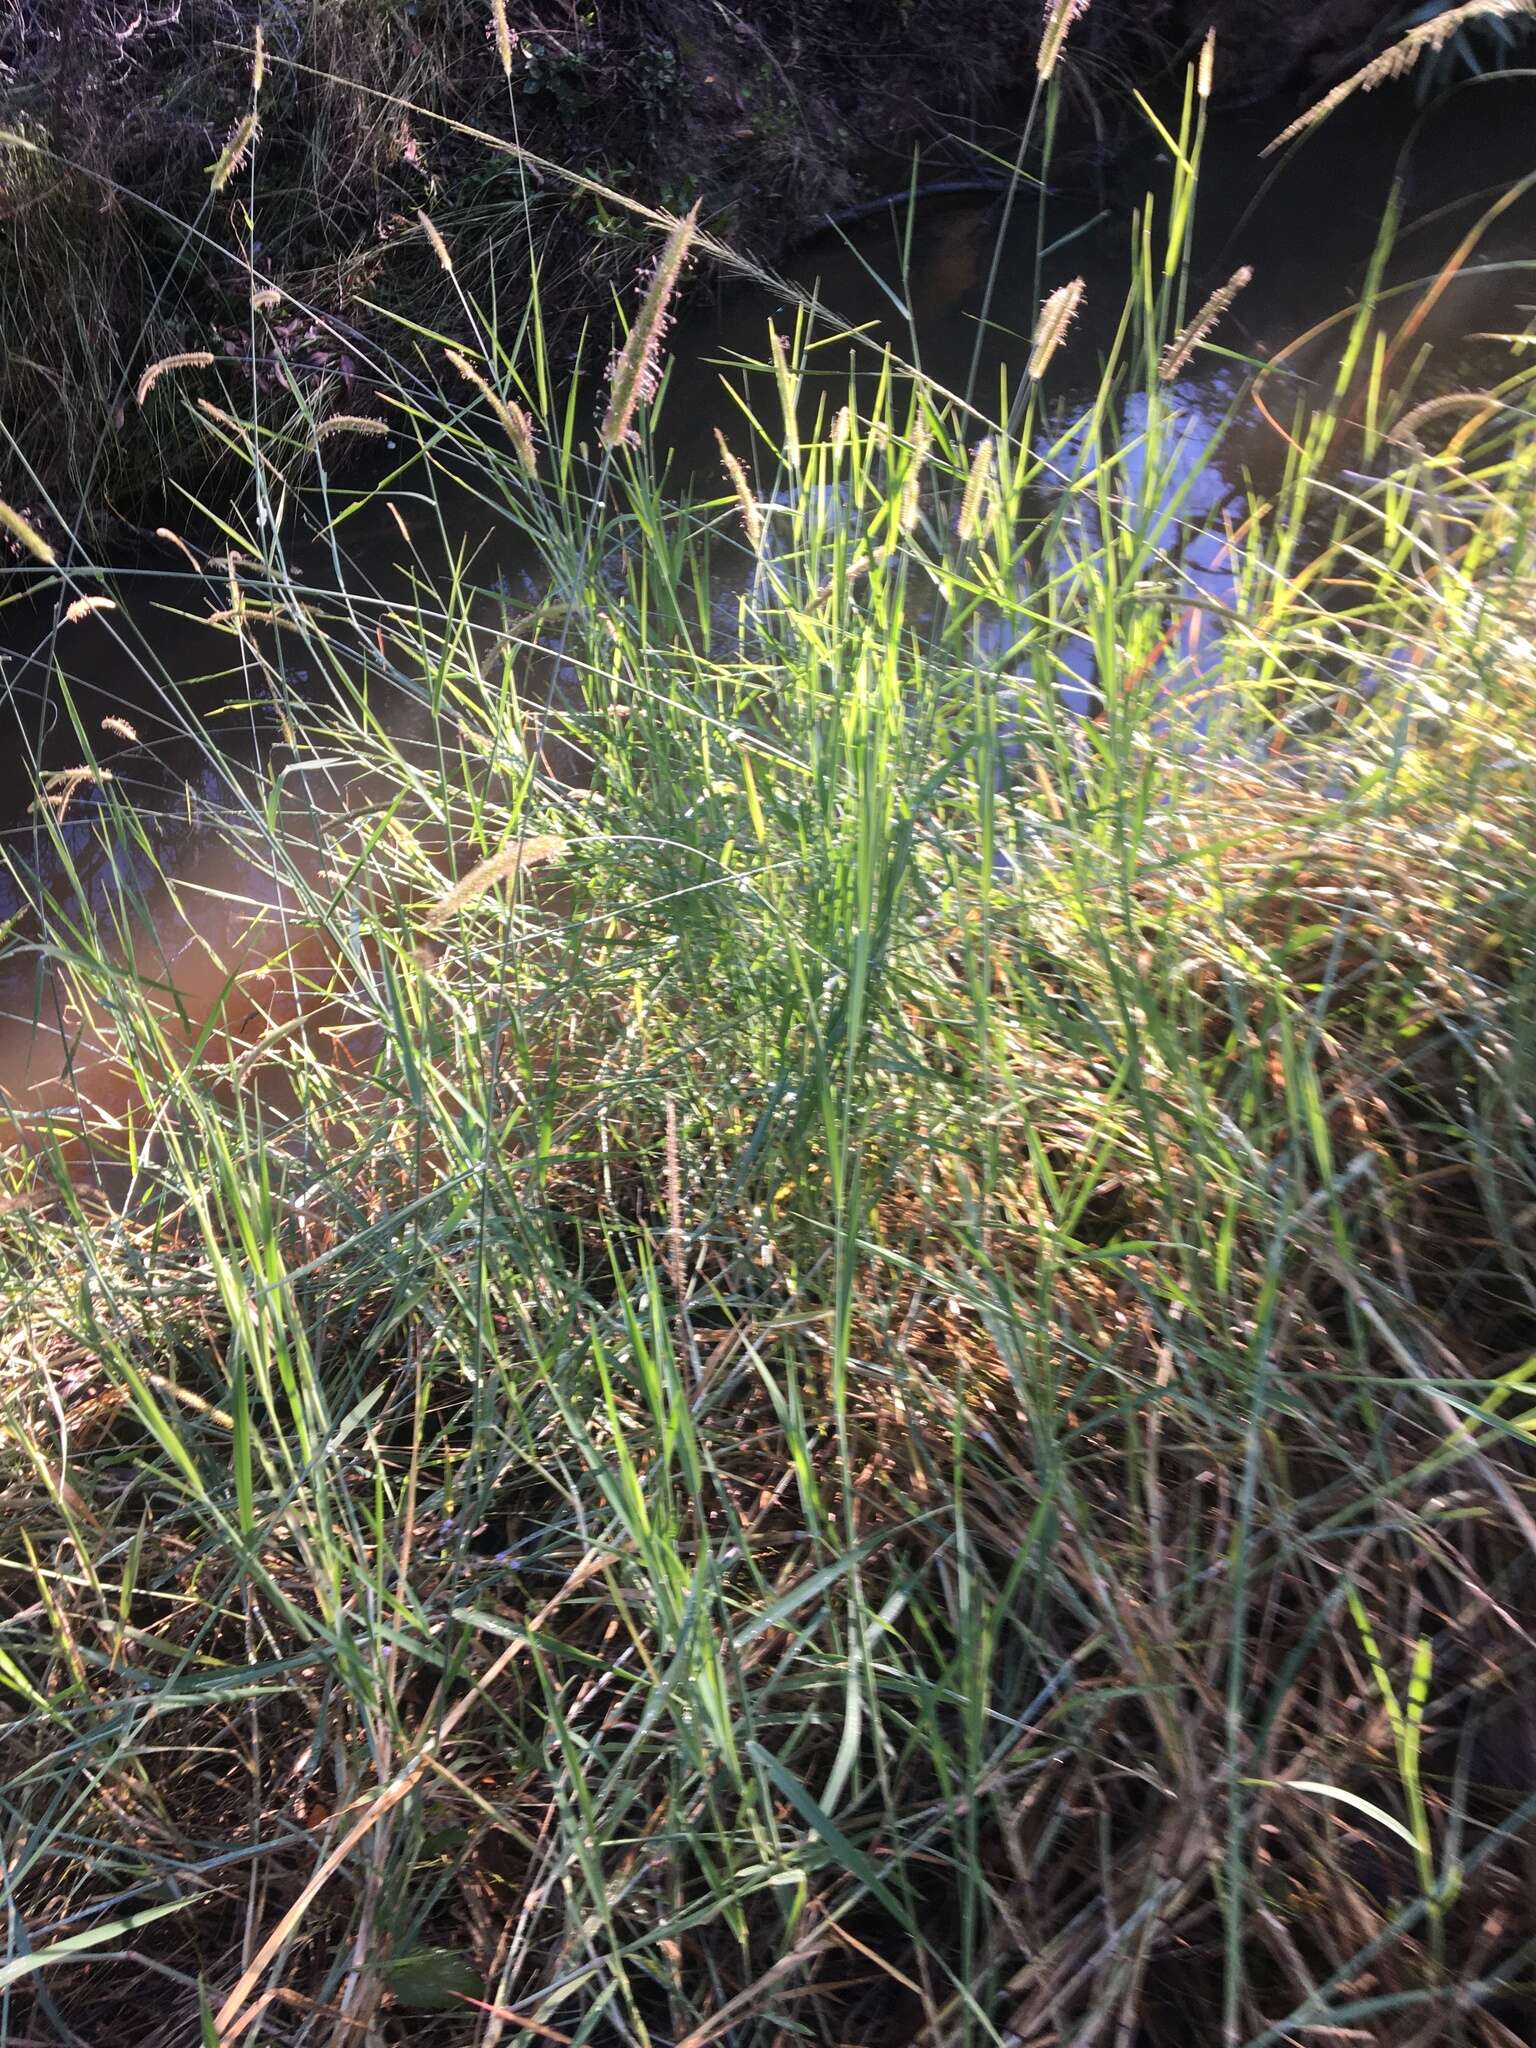 Image of Common bristle grass